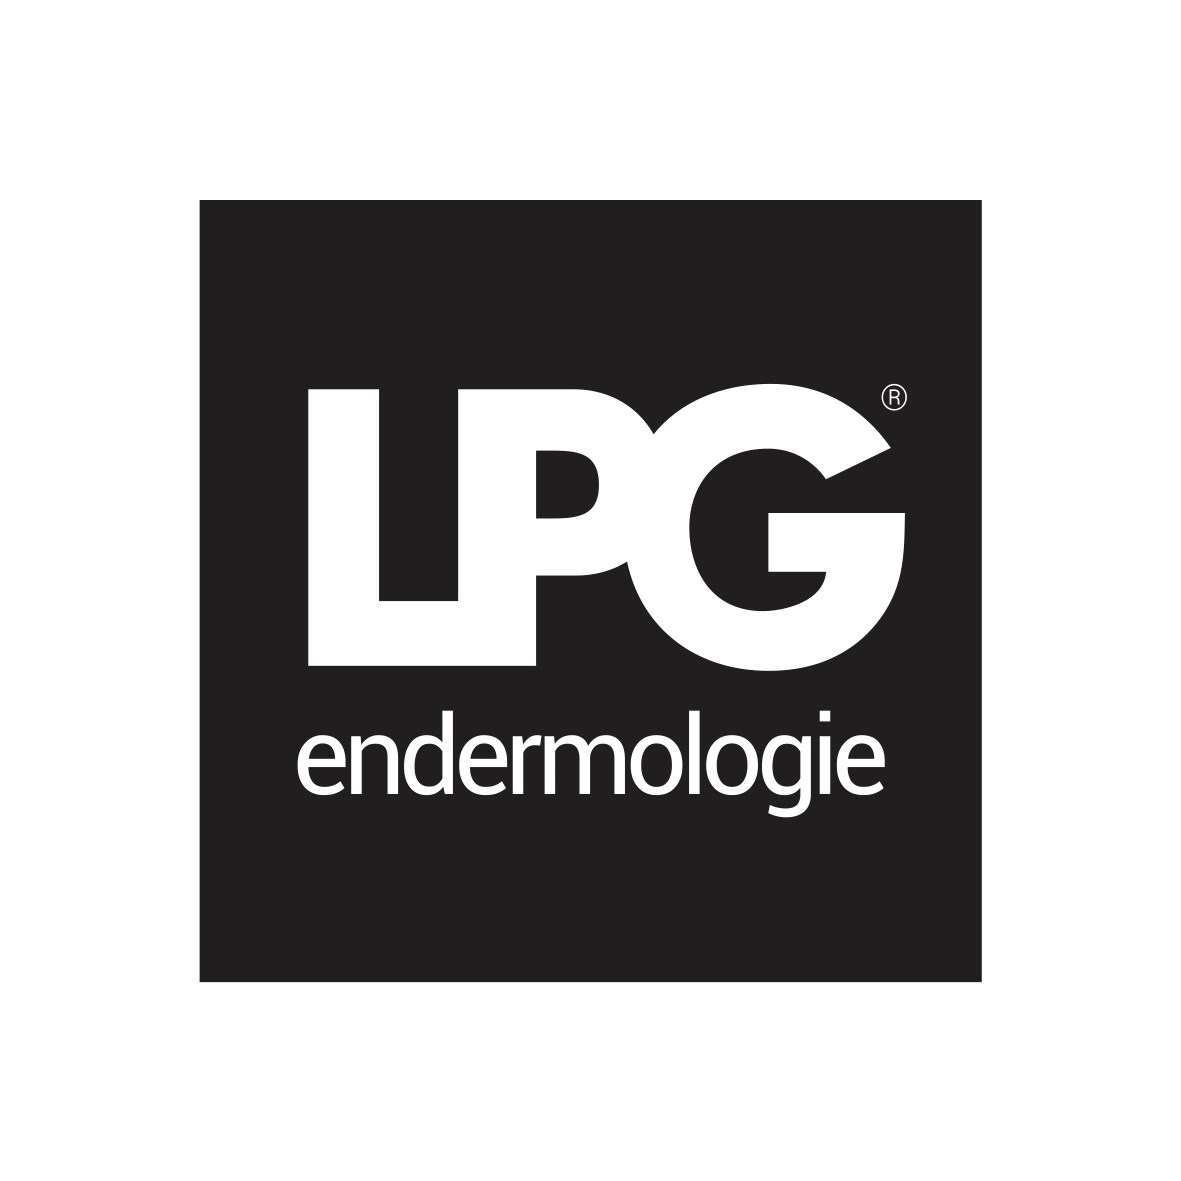 LOGO-LPG-ENDERMOLOGIE.jpg